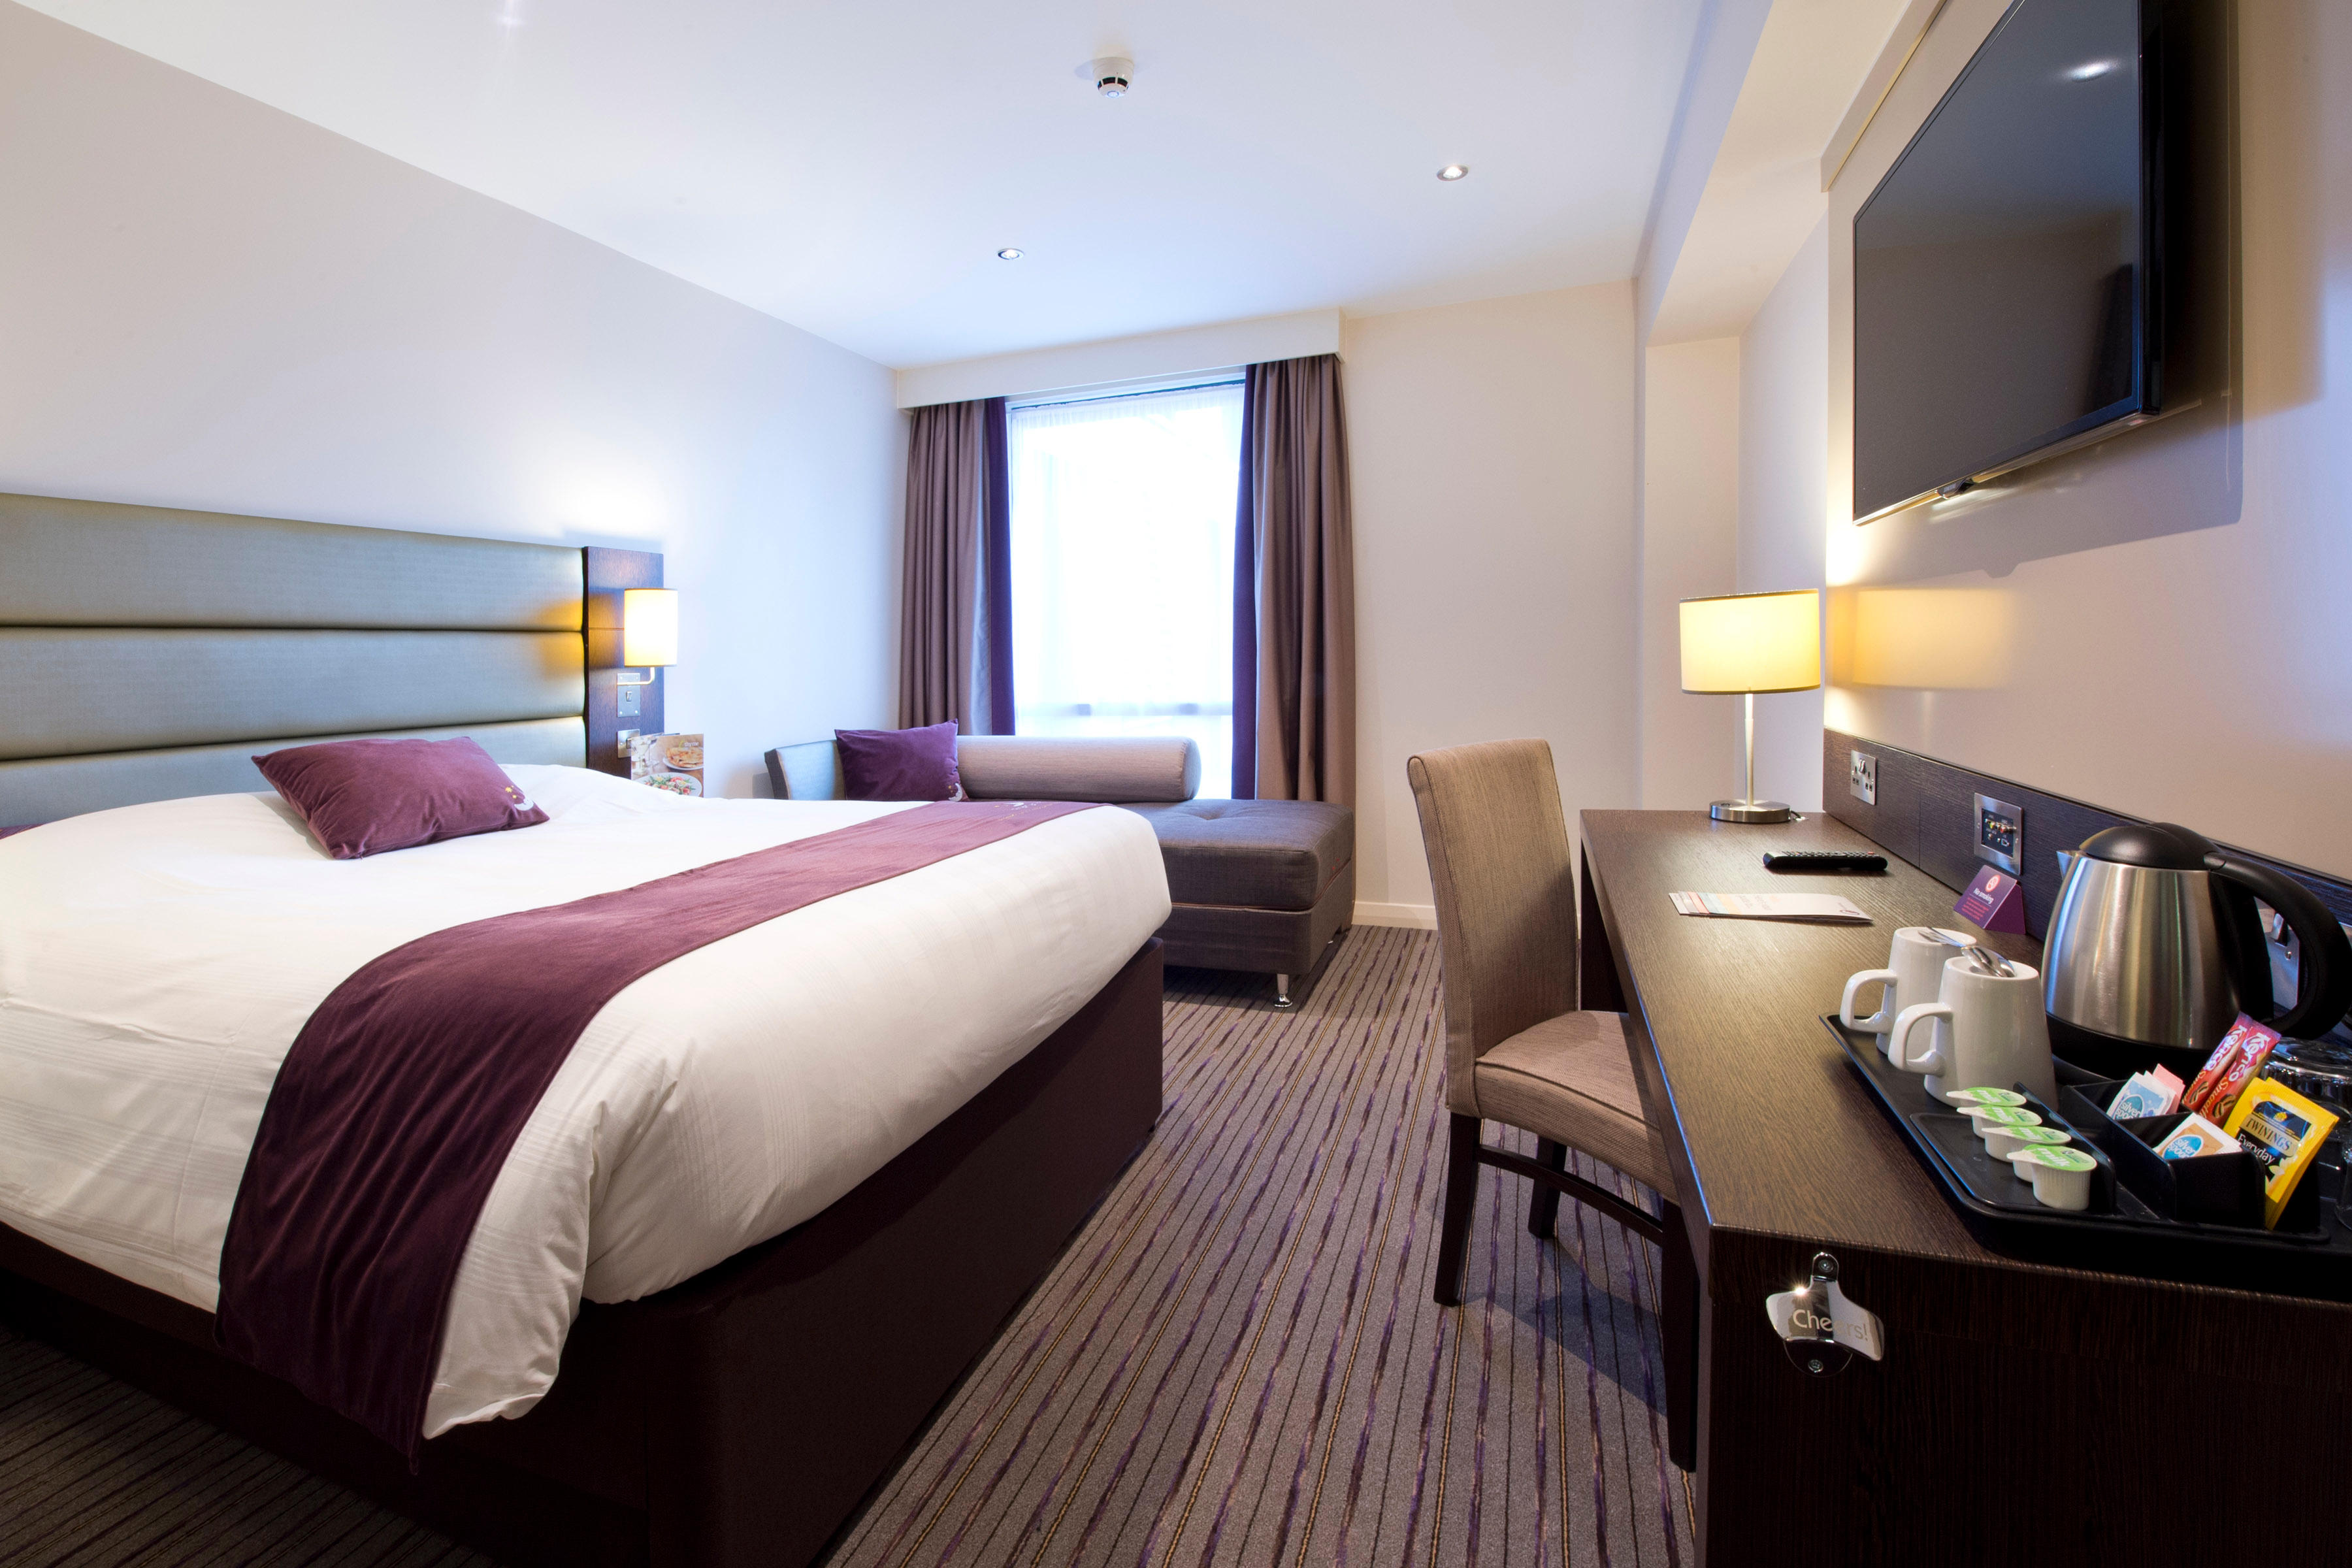 Premier Inn bedroom Premier Inn Sunderland City Centre hotel Sunderland 03330 037893